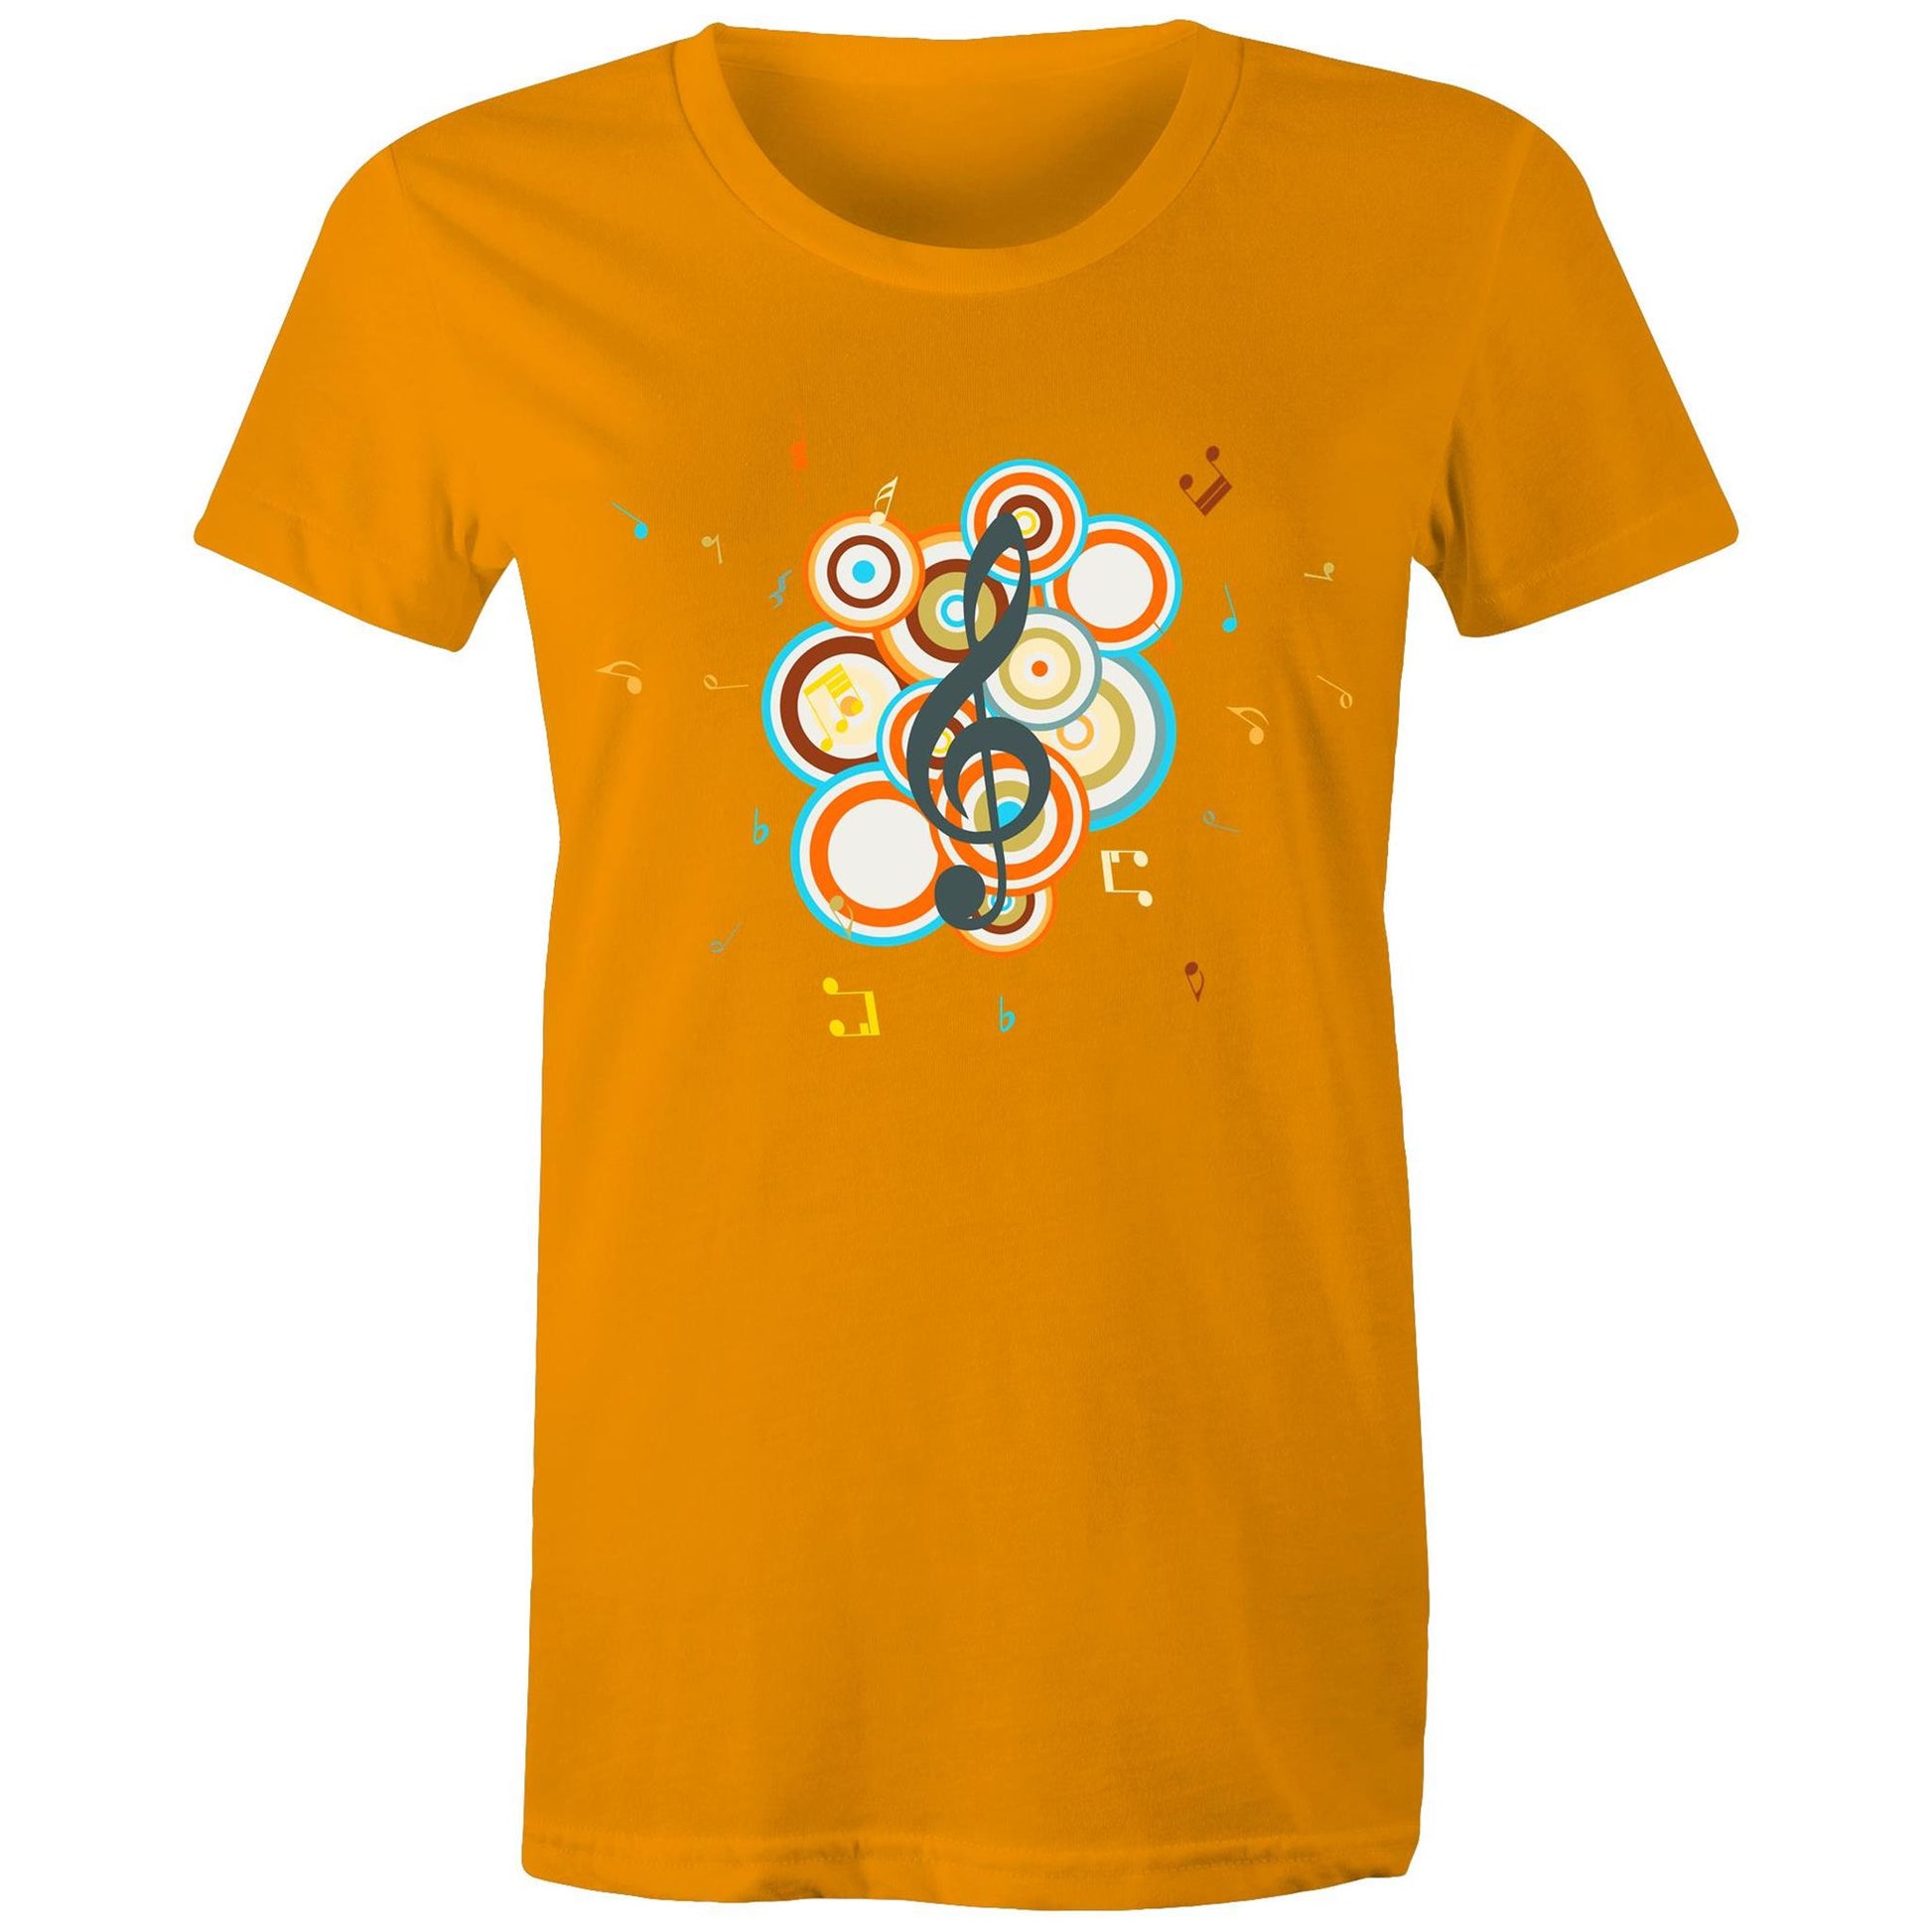 Groovy Music - Women's T-shirt Orange Womens T-shirt Music Retro Womens